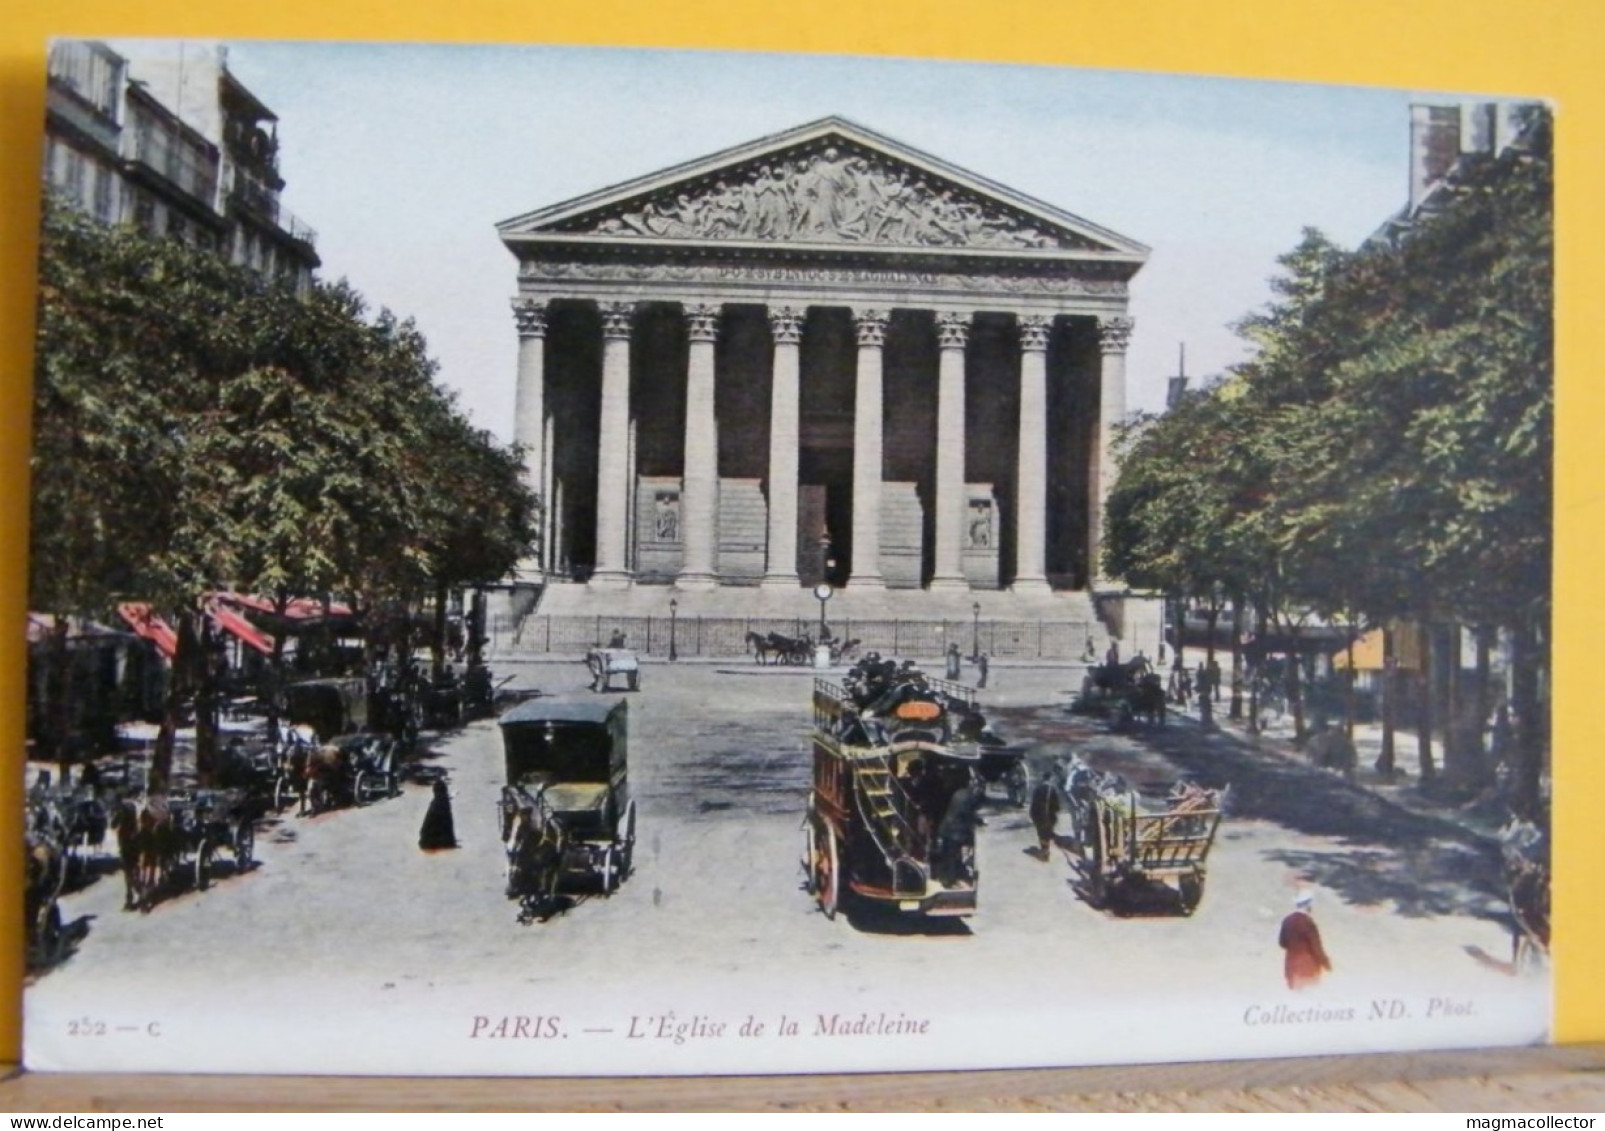 (P1) PARIGI / PARIS - L'EGLISE DE LA MADELEINE - 252-C - NON VIAGGIATA 1910/20ca - Eglises